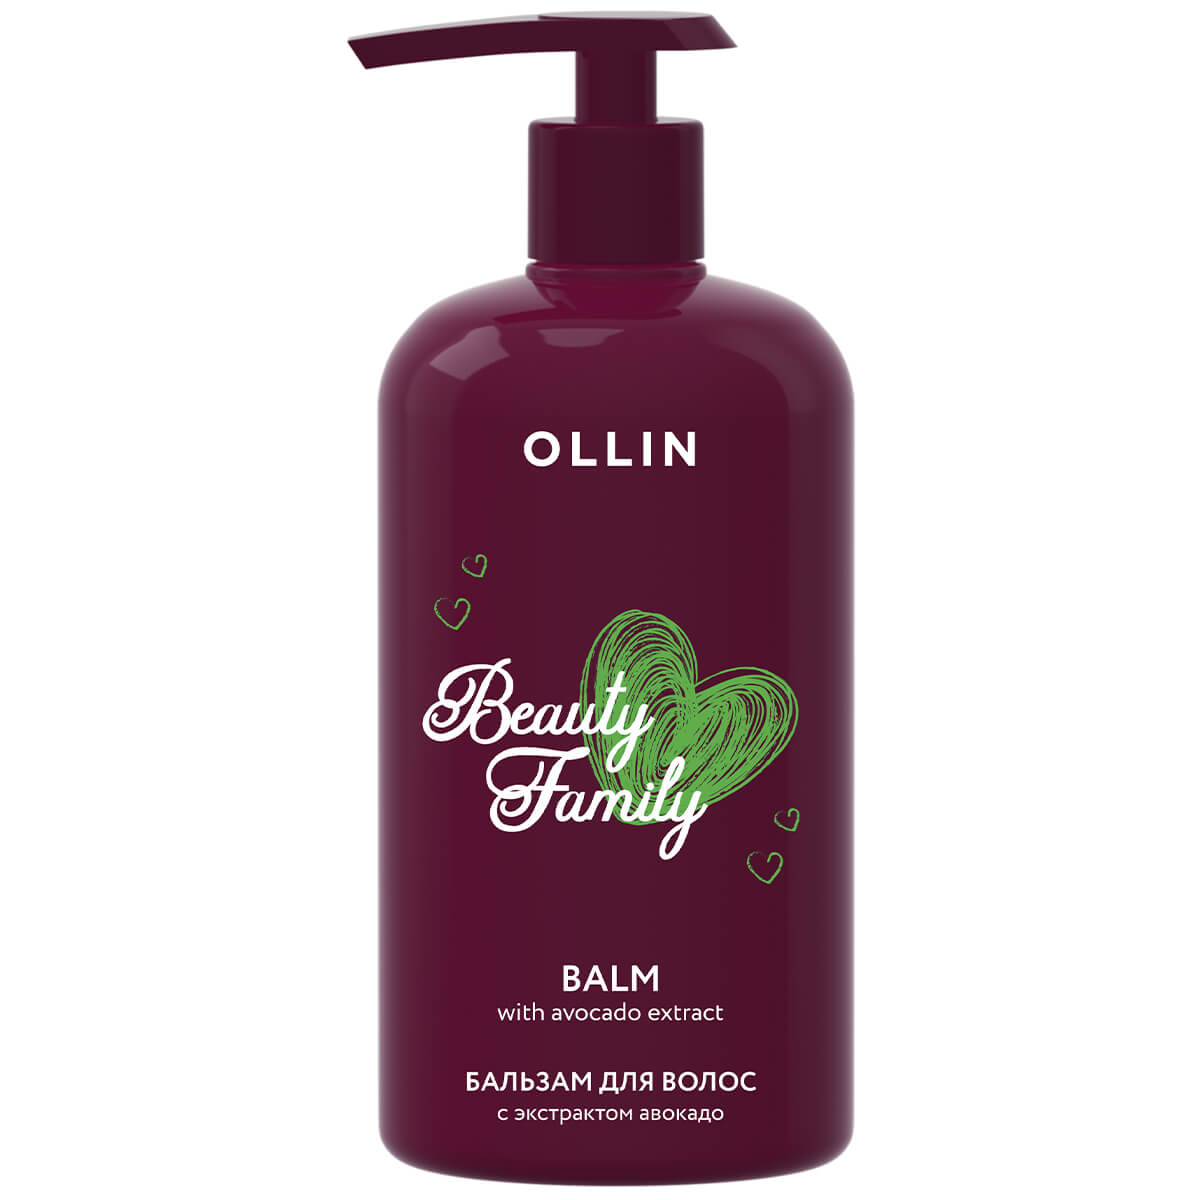 Купить Beauty Family Бальзам для волос с экстрактом авокадо, 500 мл, OLLIN, OLLIN Professional